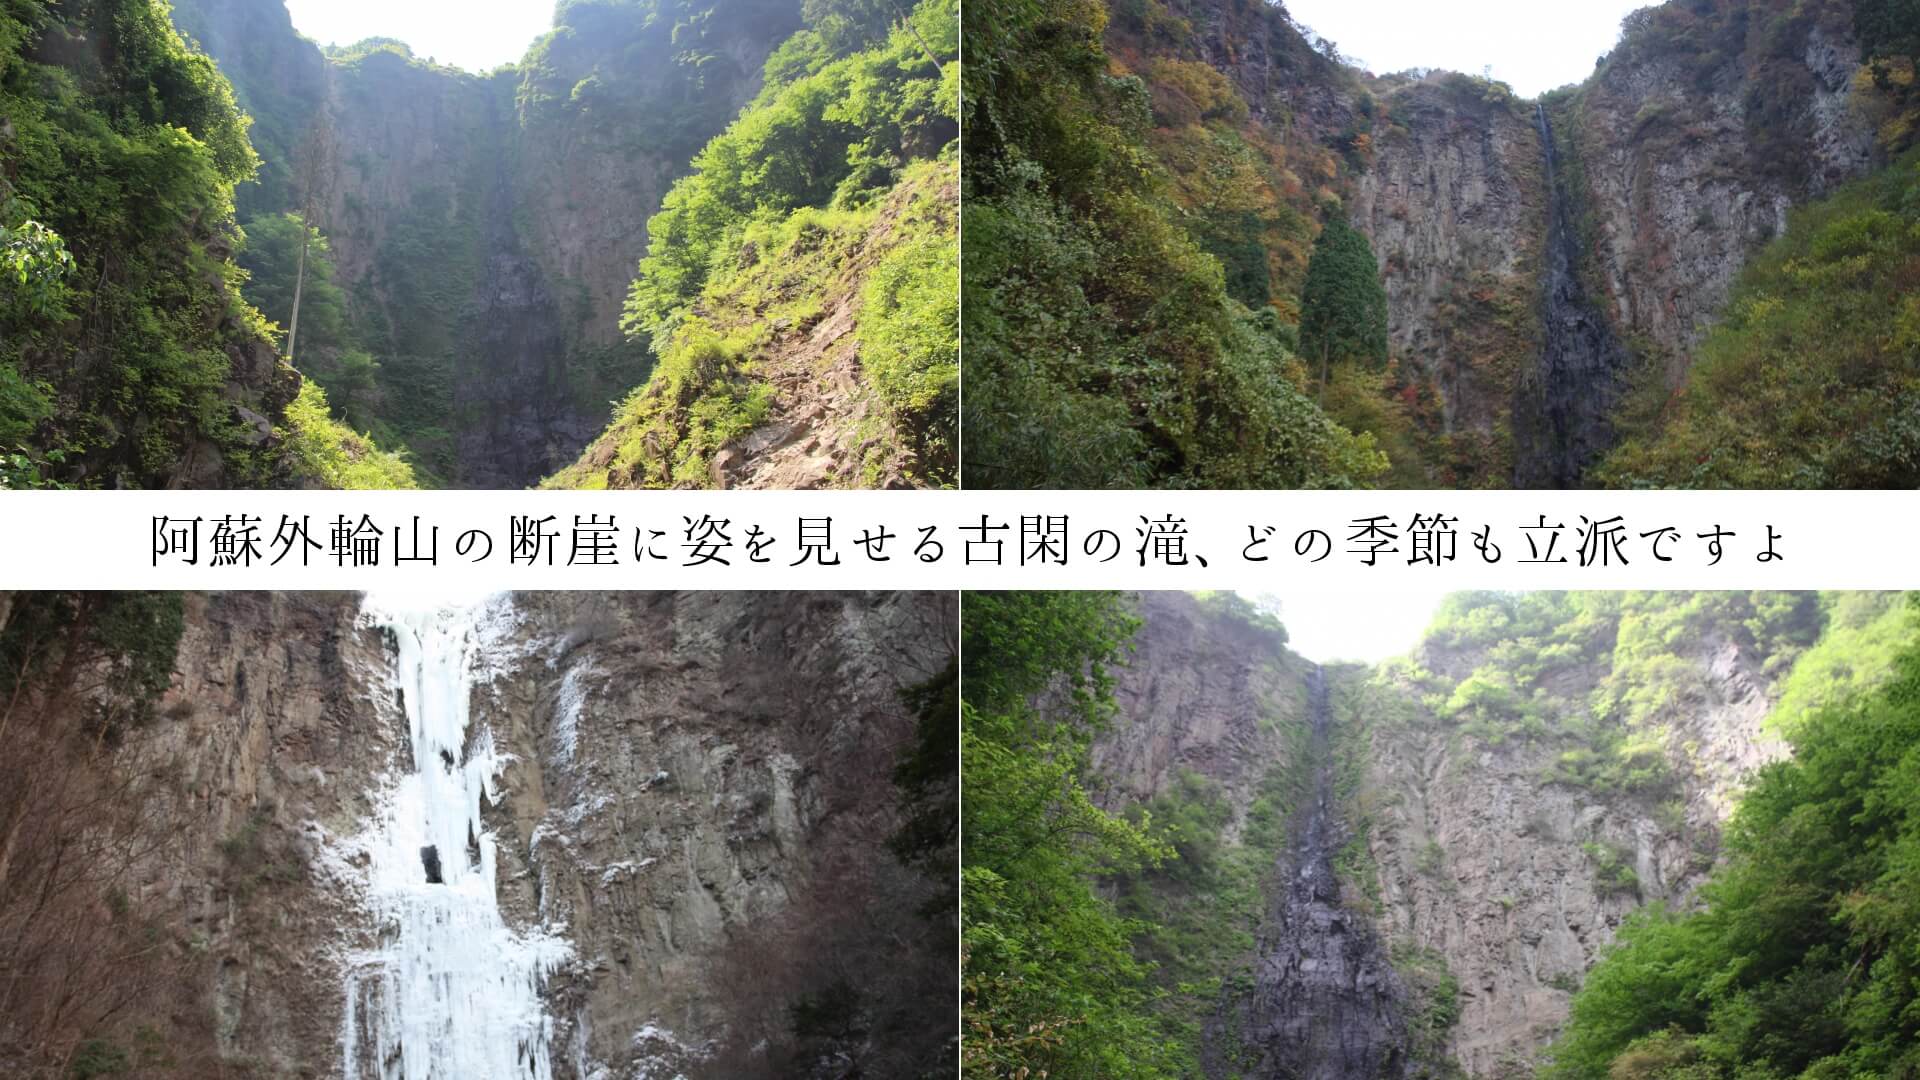 阿蘇外輪山の断崖に姿を見せる古閑の滝、どの季節も立派ですよ